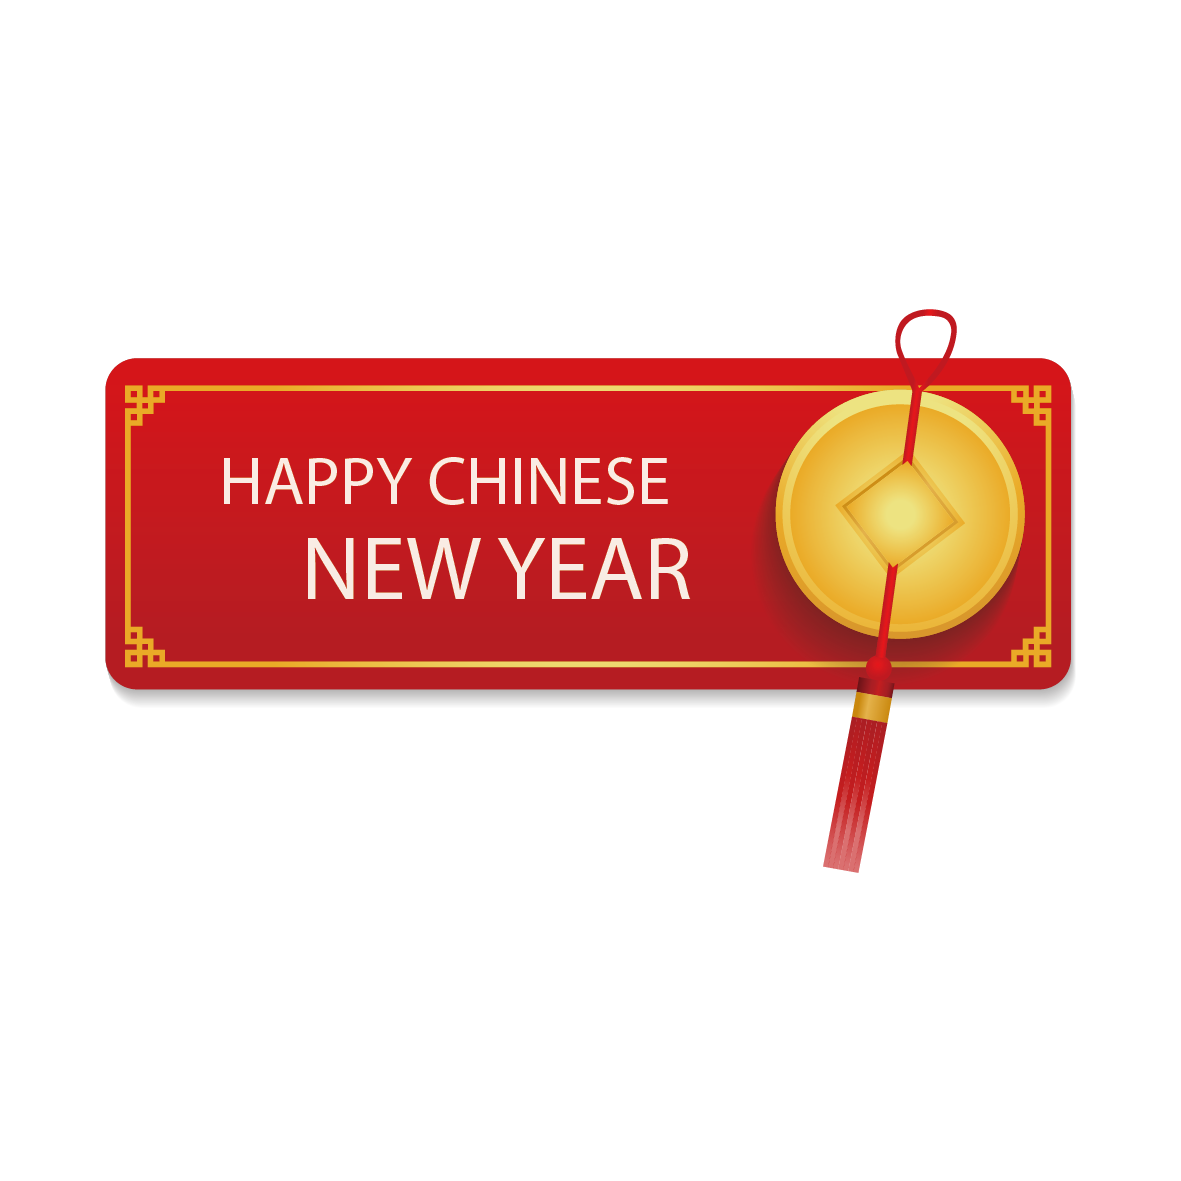 Chúc mừng năm mới và năm mới của Trung Quốc